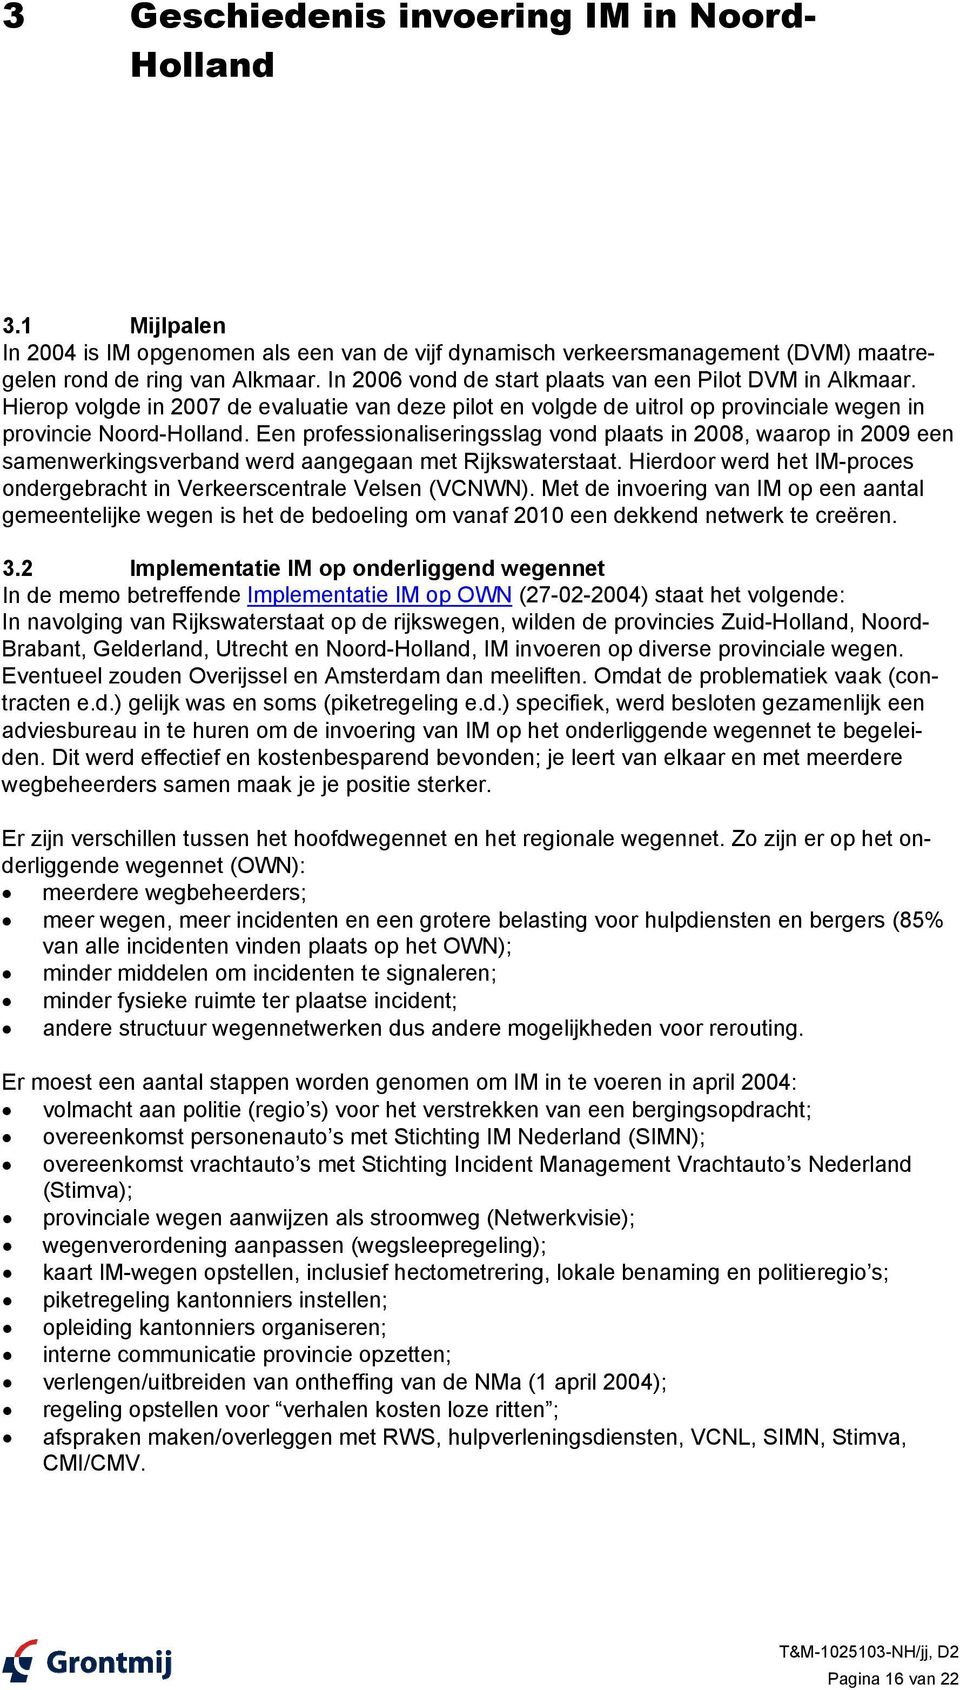 Een professionaliseringsslag vond plaats in 2008, waarop in 2009 een samenwerkingsverband werd aangegaan met Rijkswaterstaat.